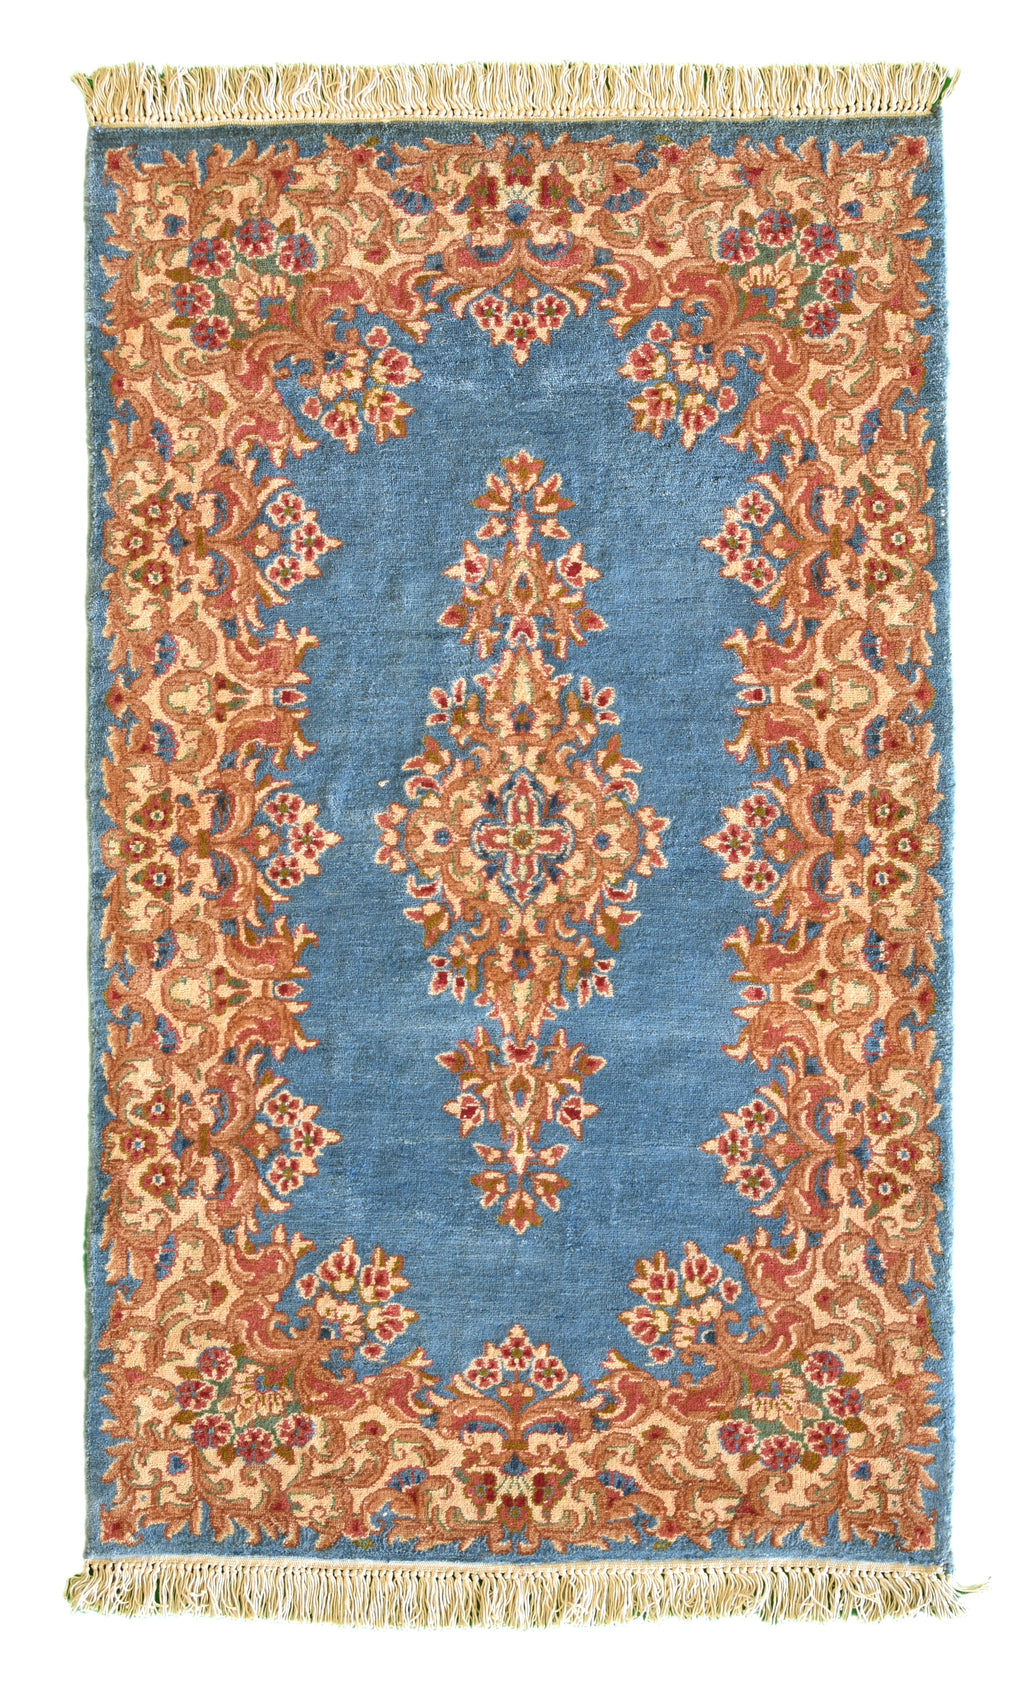 Kerman Persian rug 3 x 5